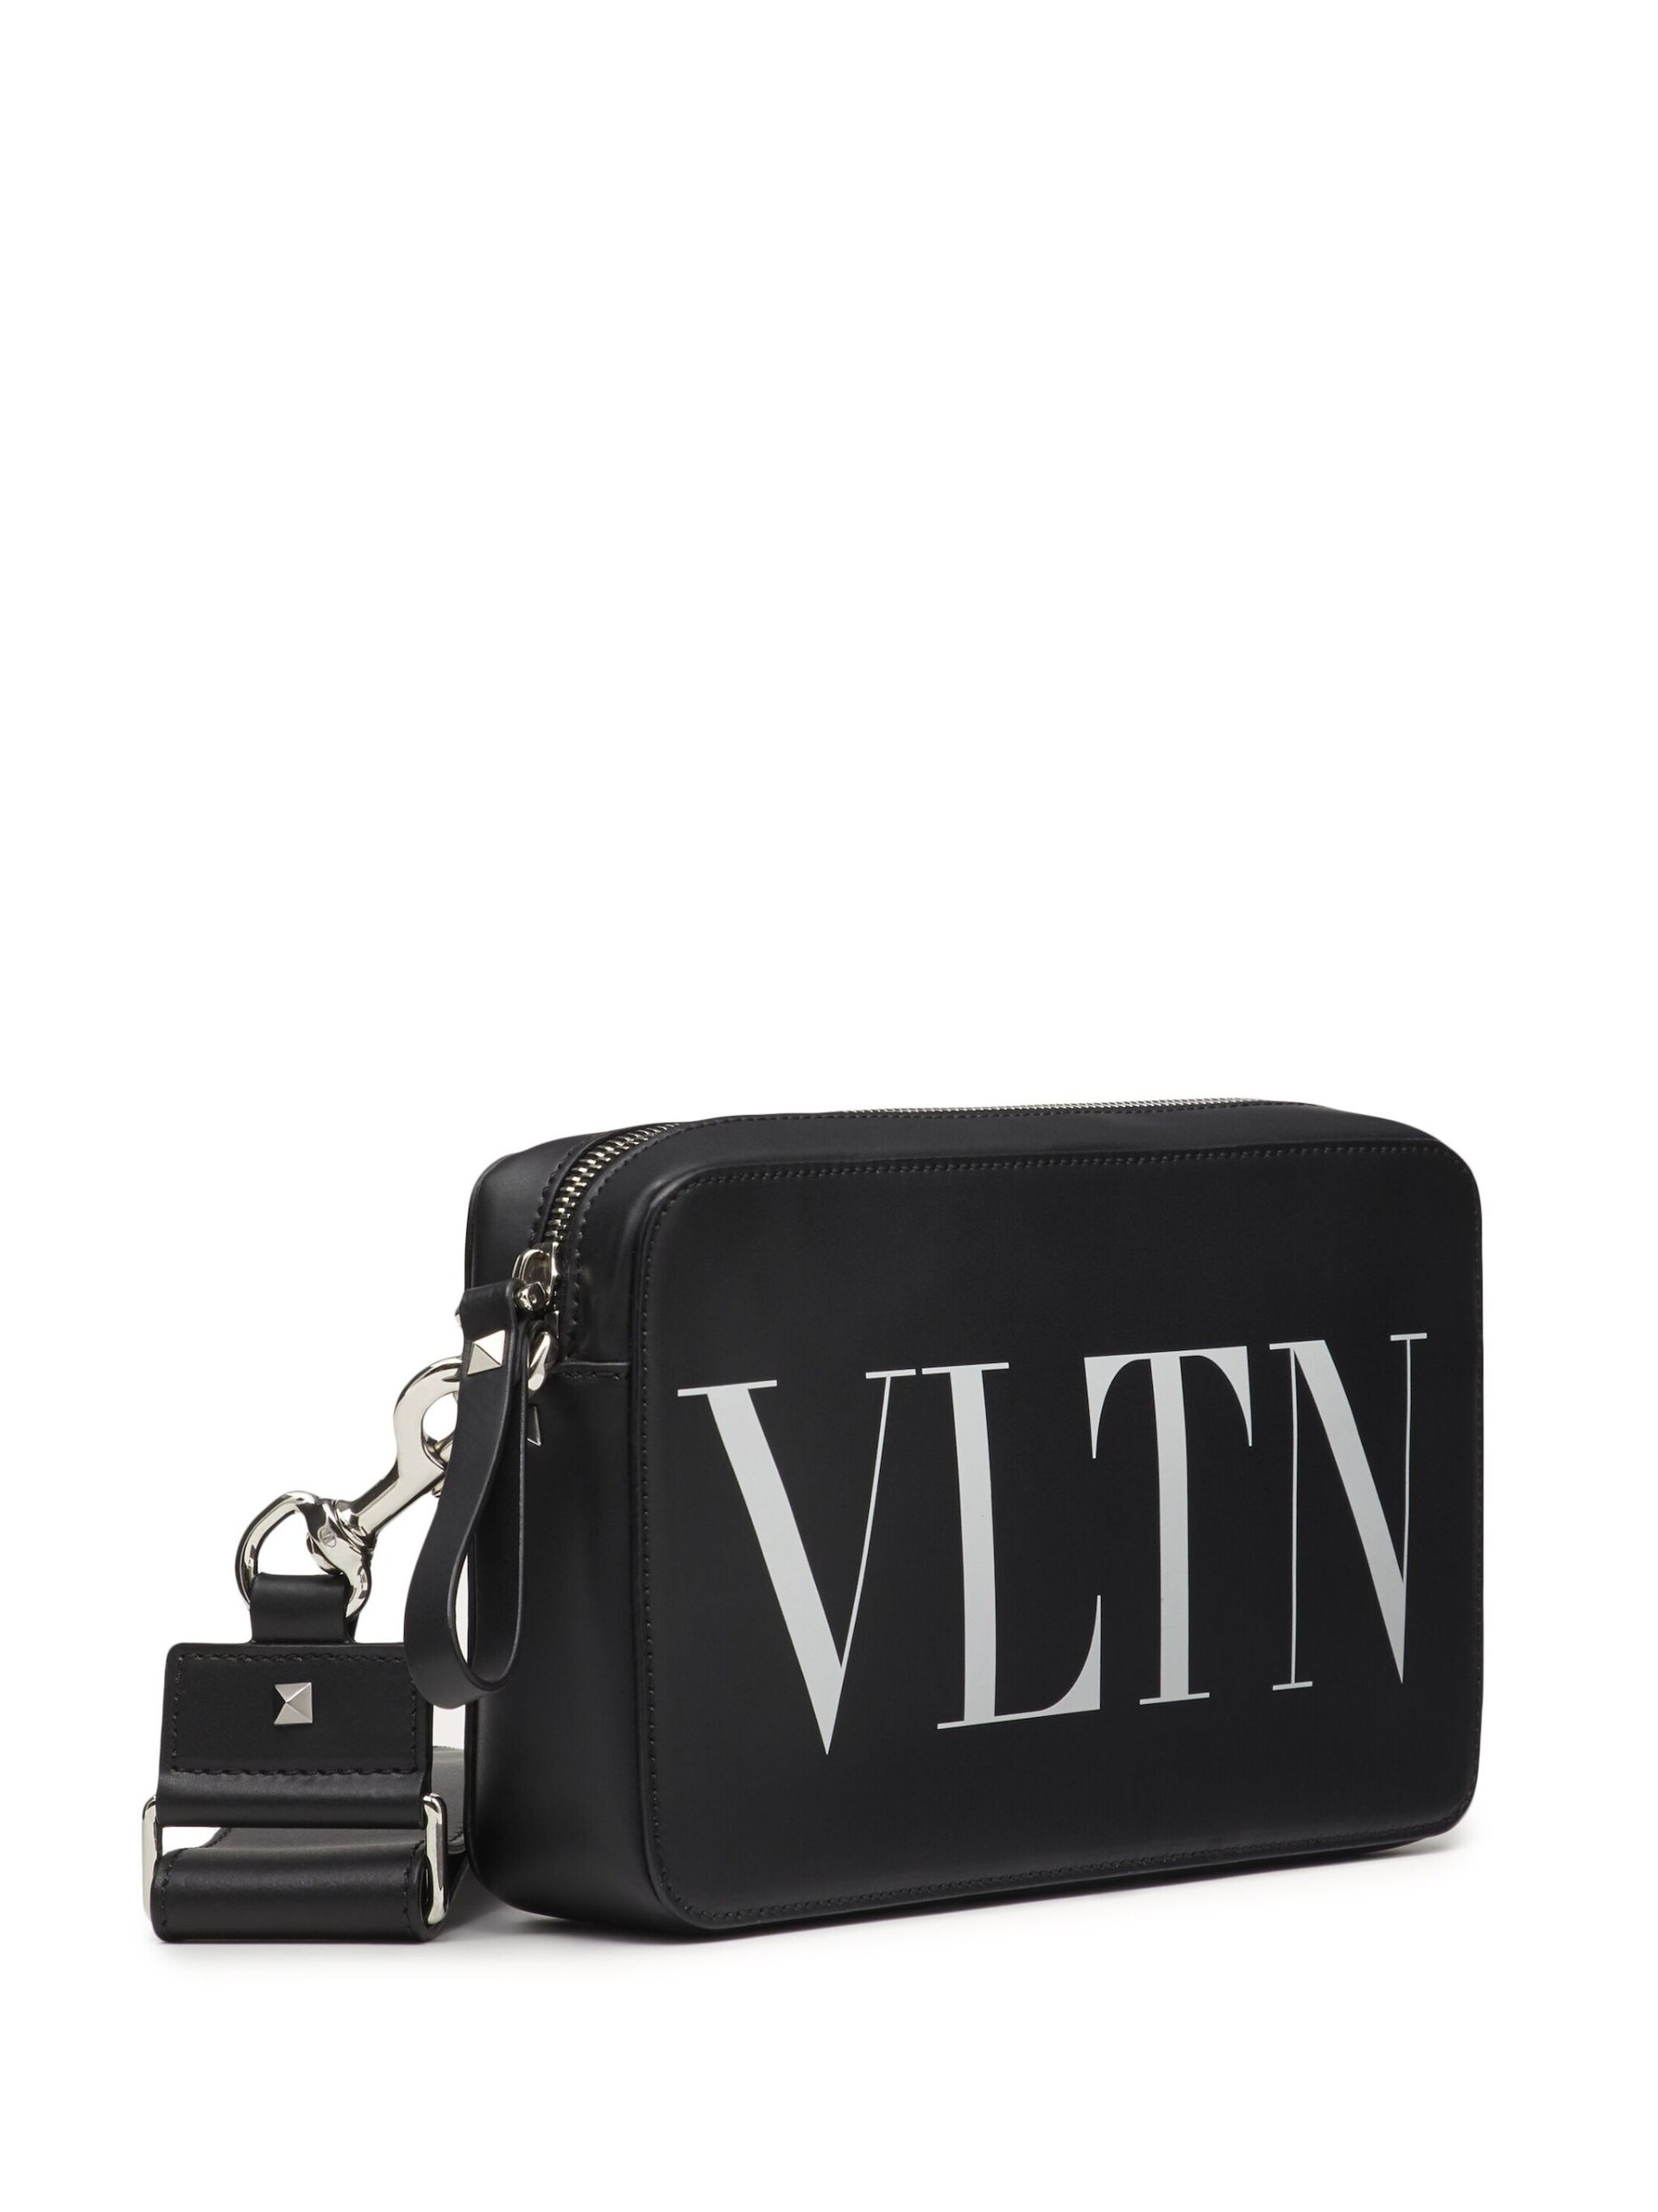 Black VLTN Leather Messenger Bag - 3